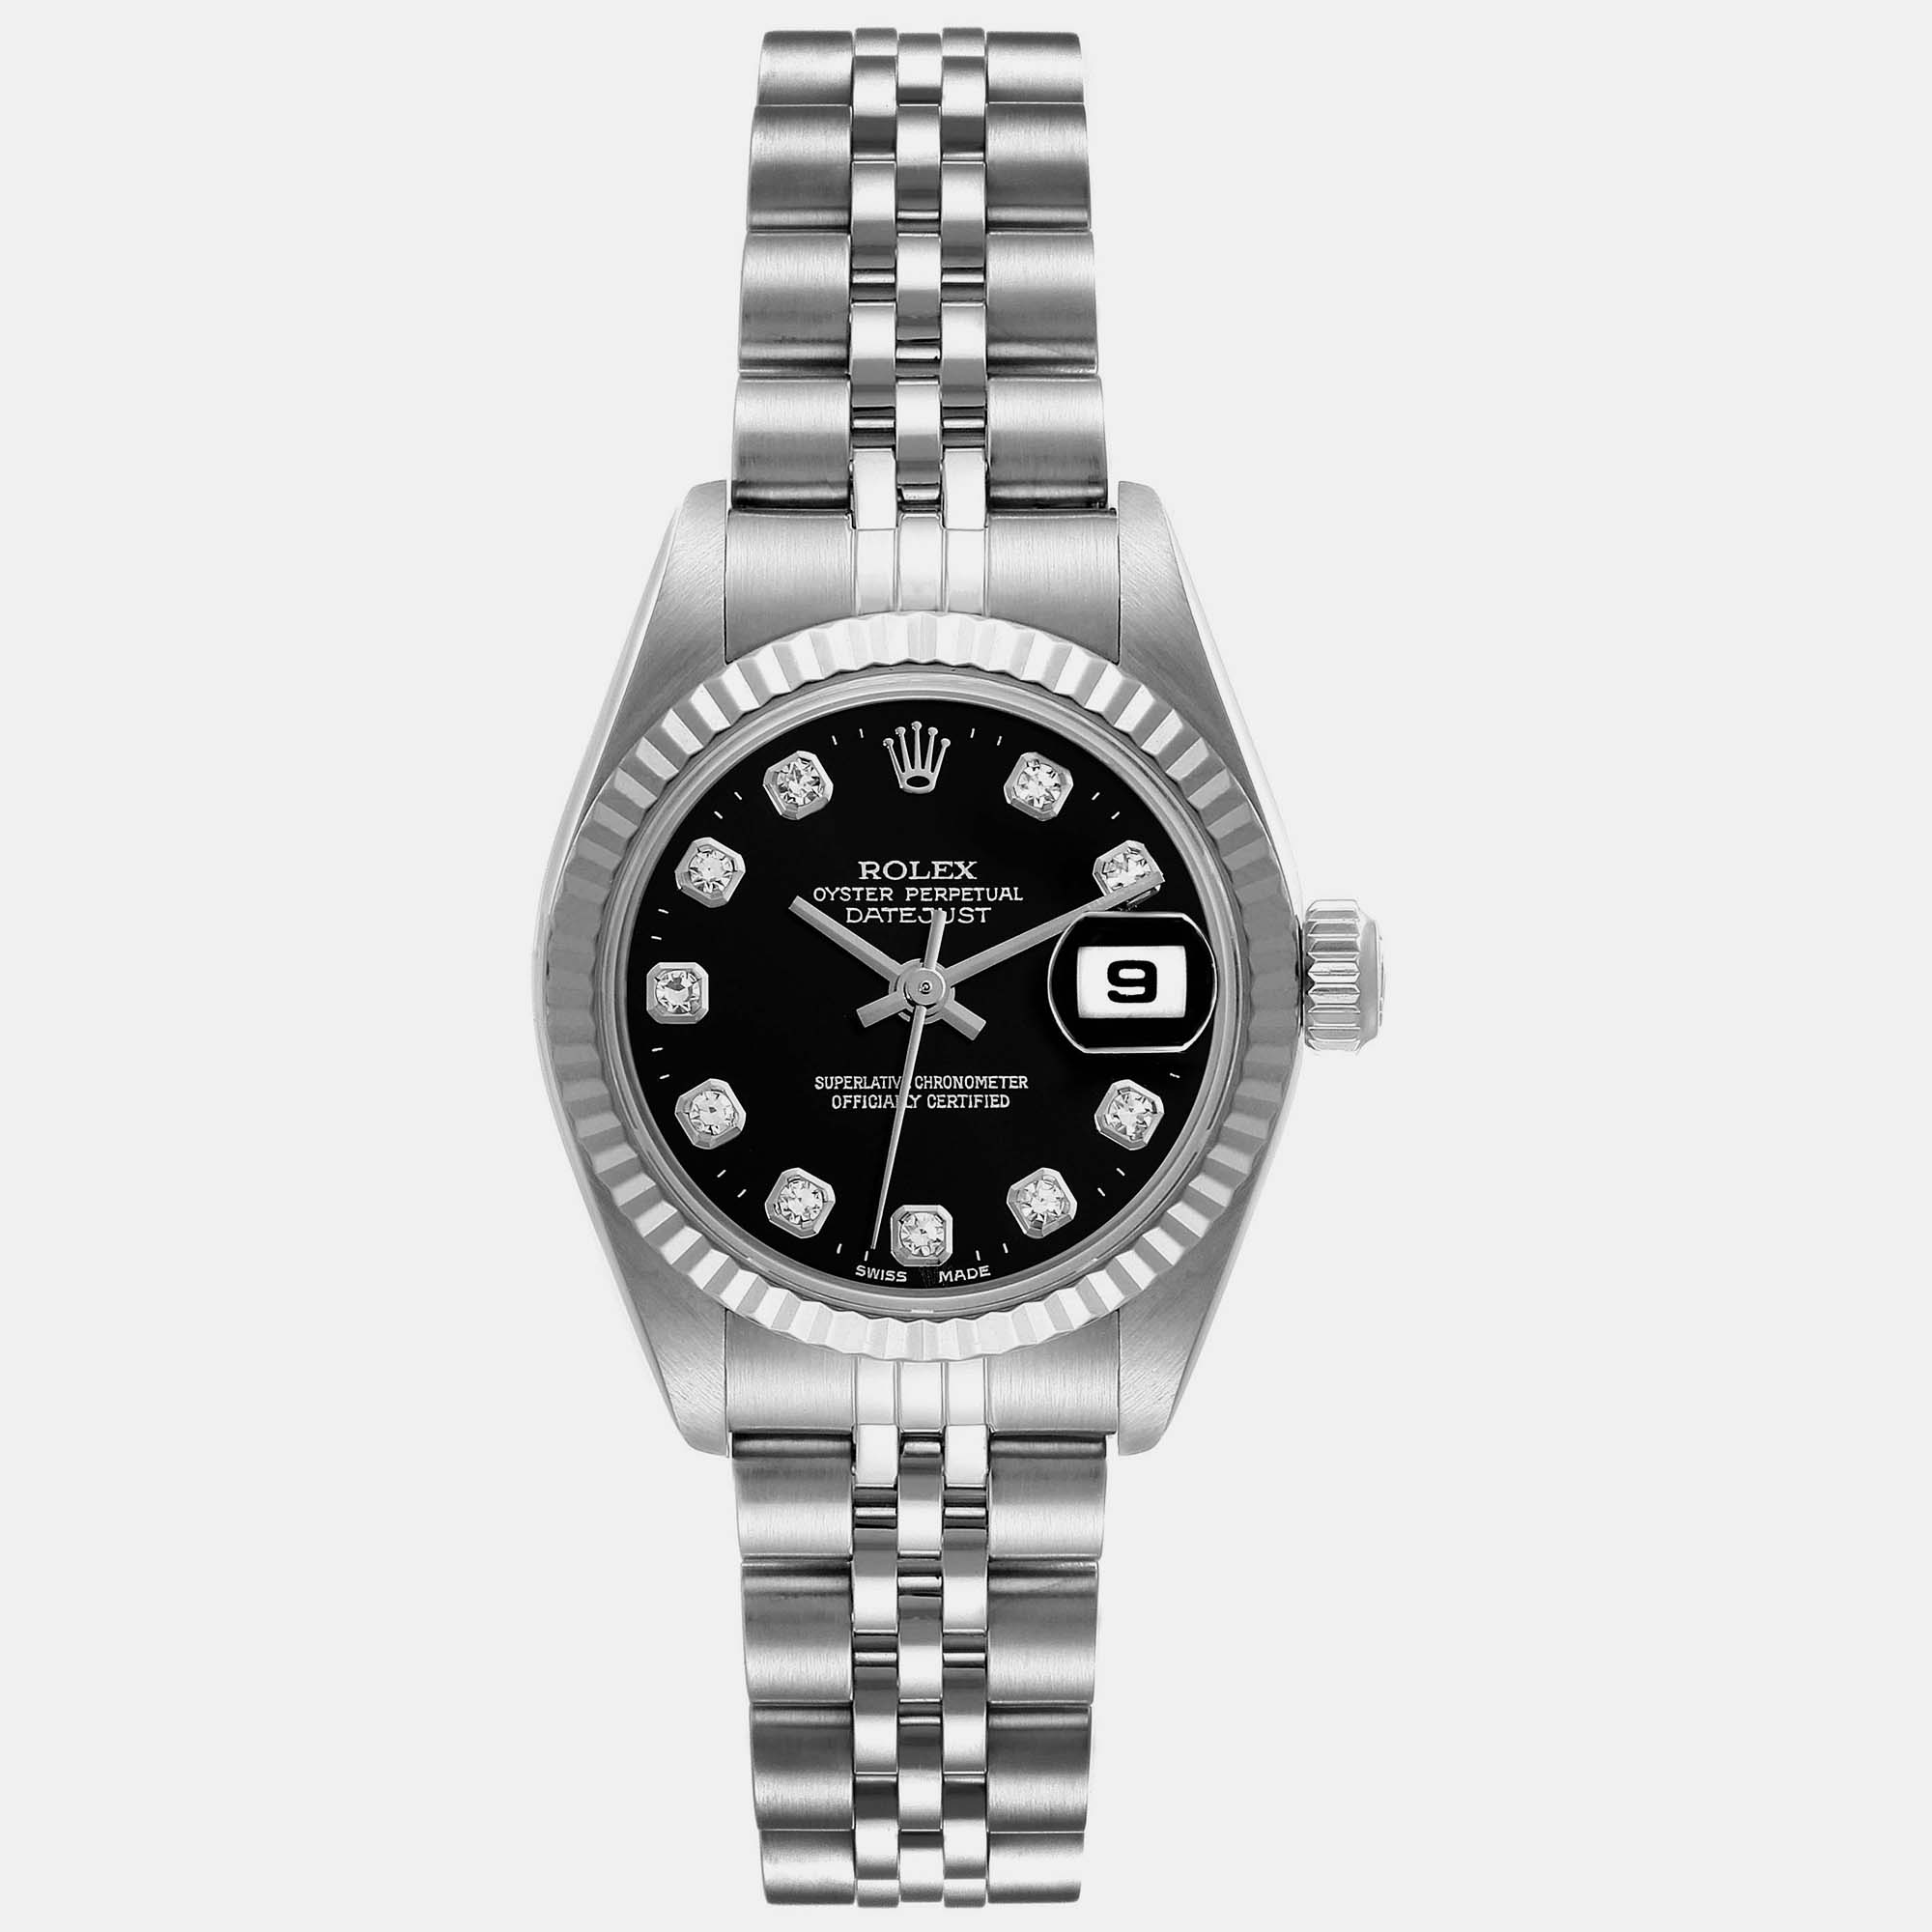 Rolex Datejust Steel White Gold Black Diamond Dial Ladies Watch 79174